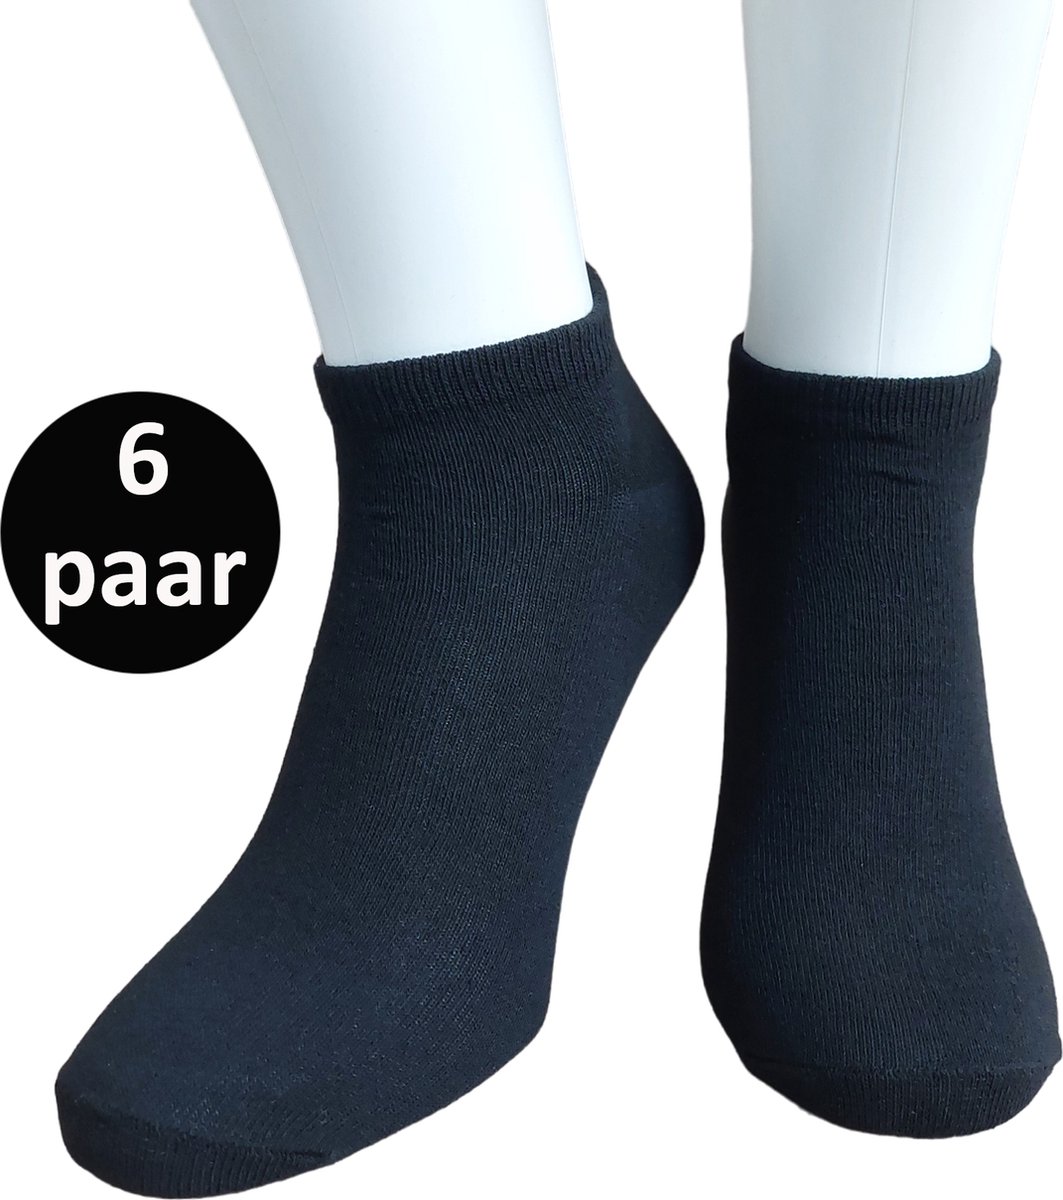 WeirdoSox Sneaker Sokken - 6 paar - Unisex - Zwart - Maat 35/38 - Enkel sokken - Korte sokken